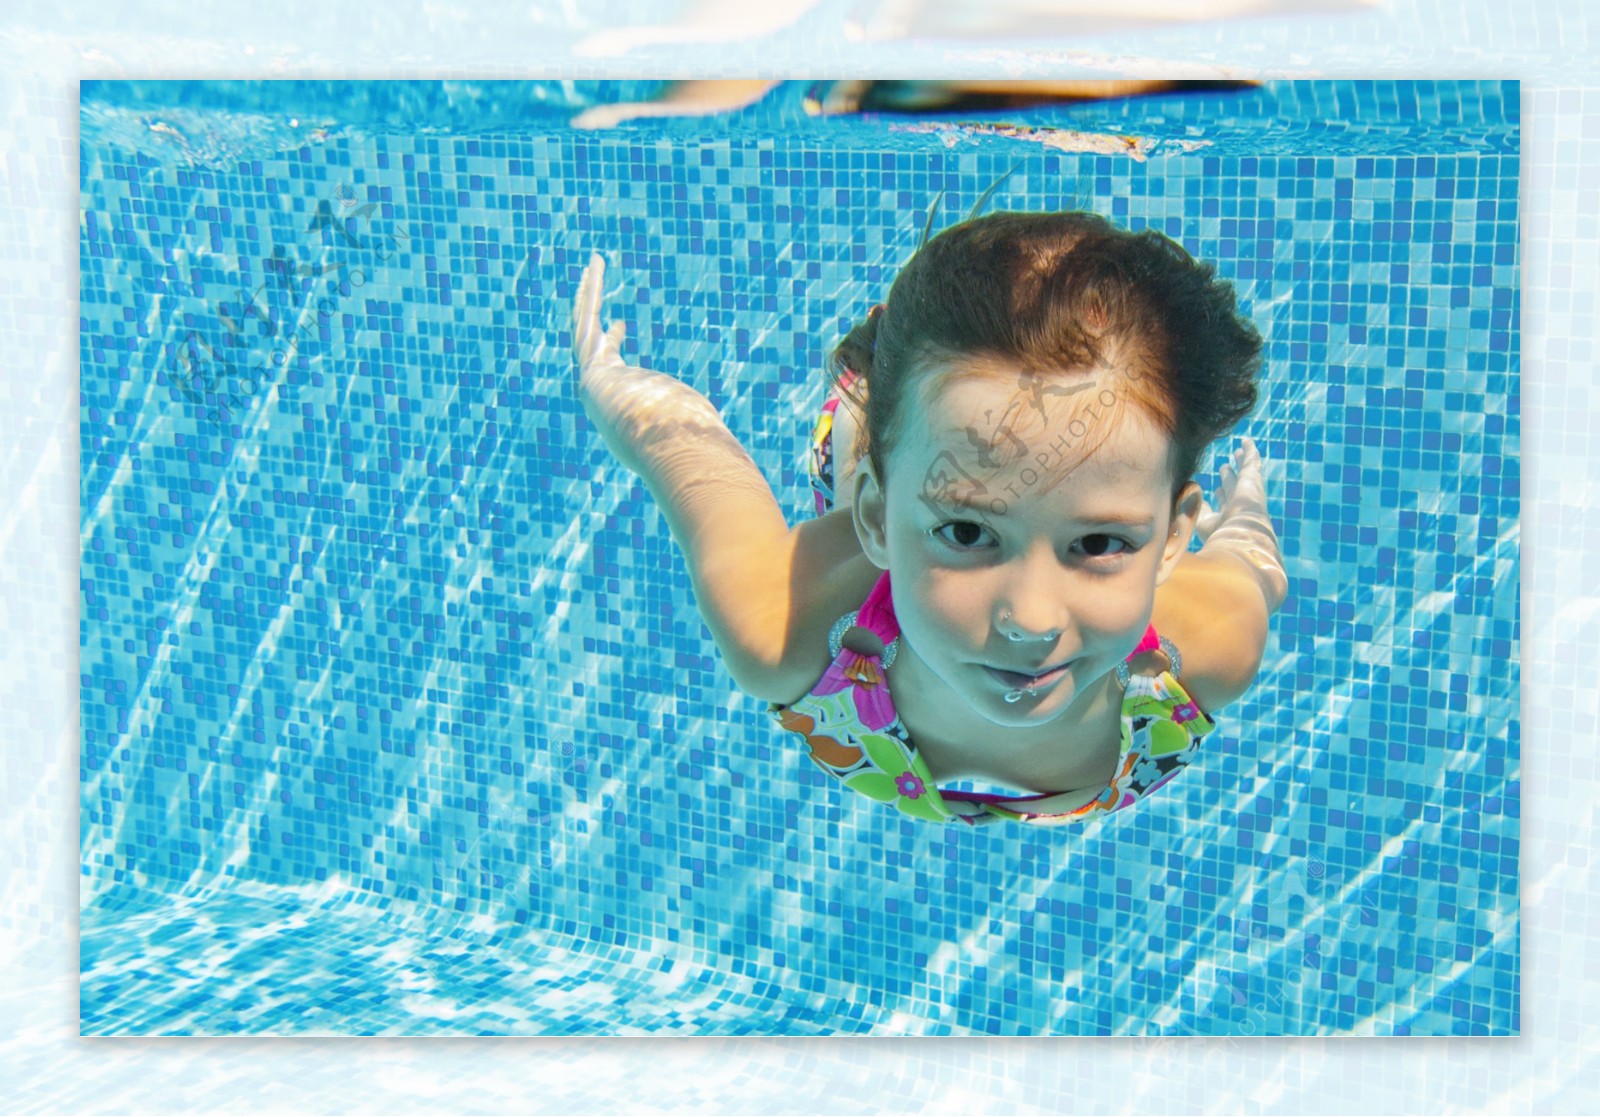 小女孩在游泳池边 库存图片. 图片 包括有 健康, 手段, 逗人喜爱, 放松, 婴孩, 外出, 室外, 学龄前儿童 - 32541165